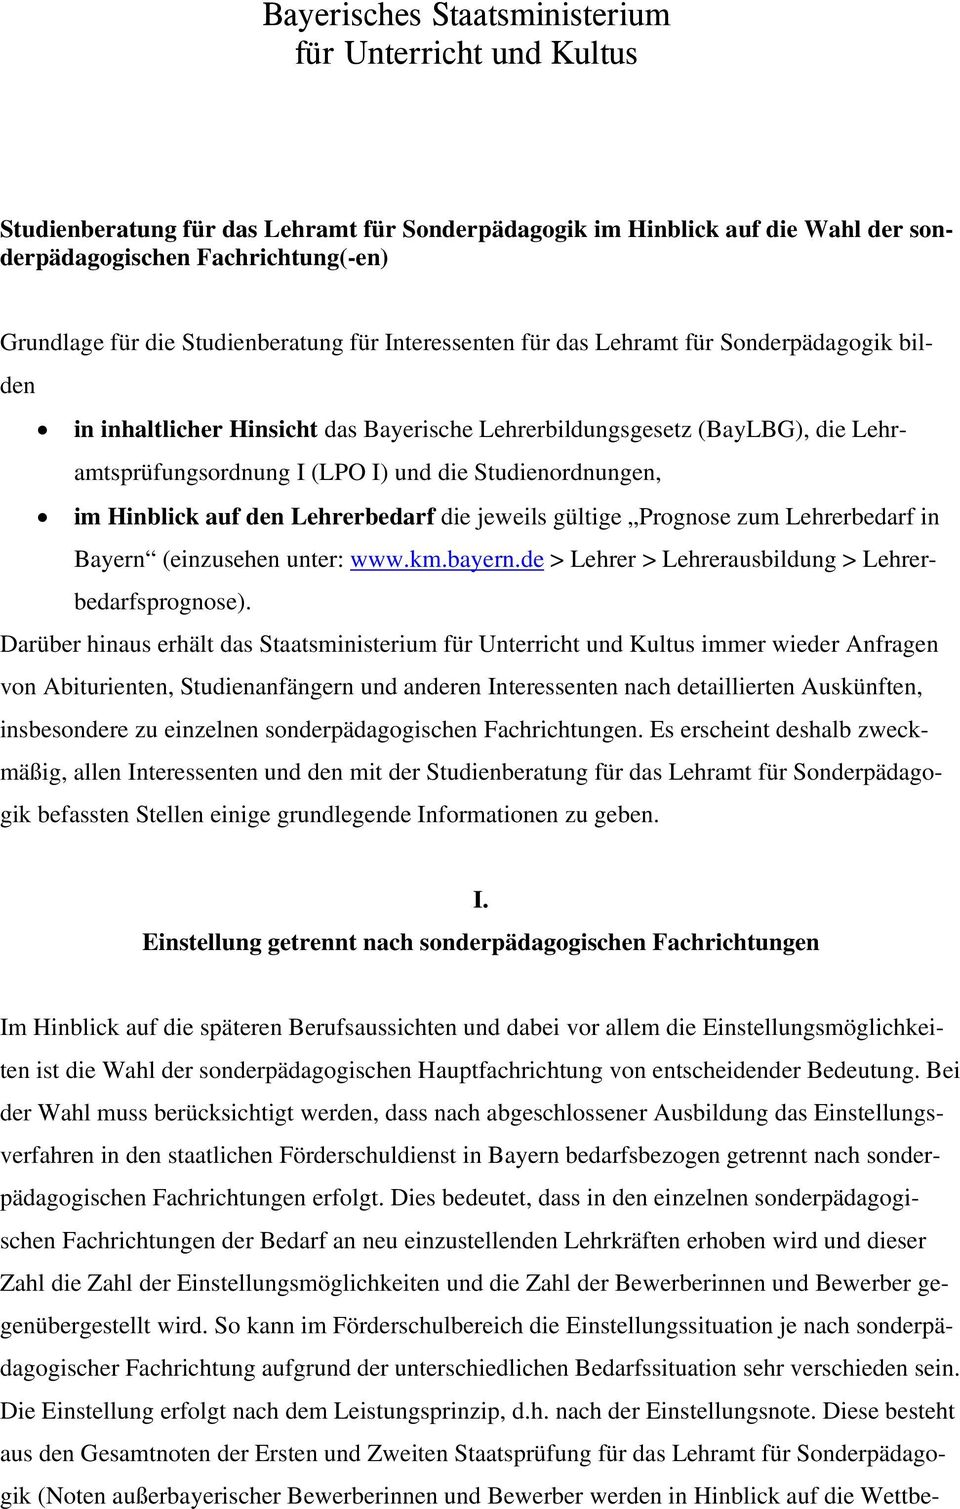 Studienordnungen, im Hinblick auf den Lehrerbedarf die jeweils gültige Prognose zum Lehrerbedarf in Bayern (einzusehen unter: www.km.bayern.de > Lehrer > Lehrerausbildung > Lehrerbedarfsprognose).